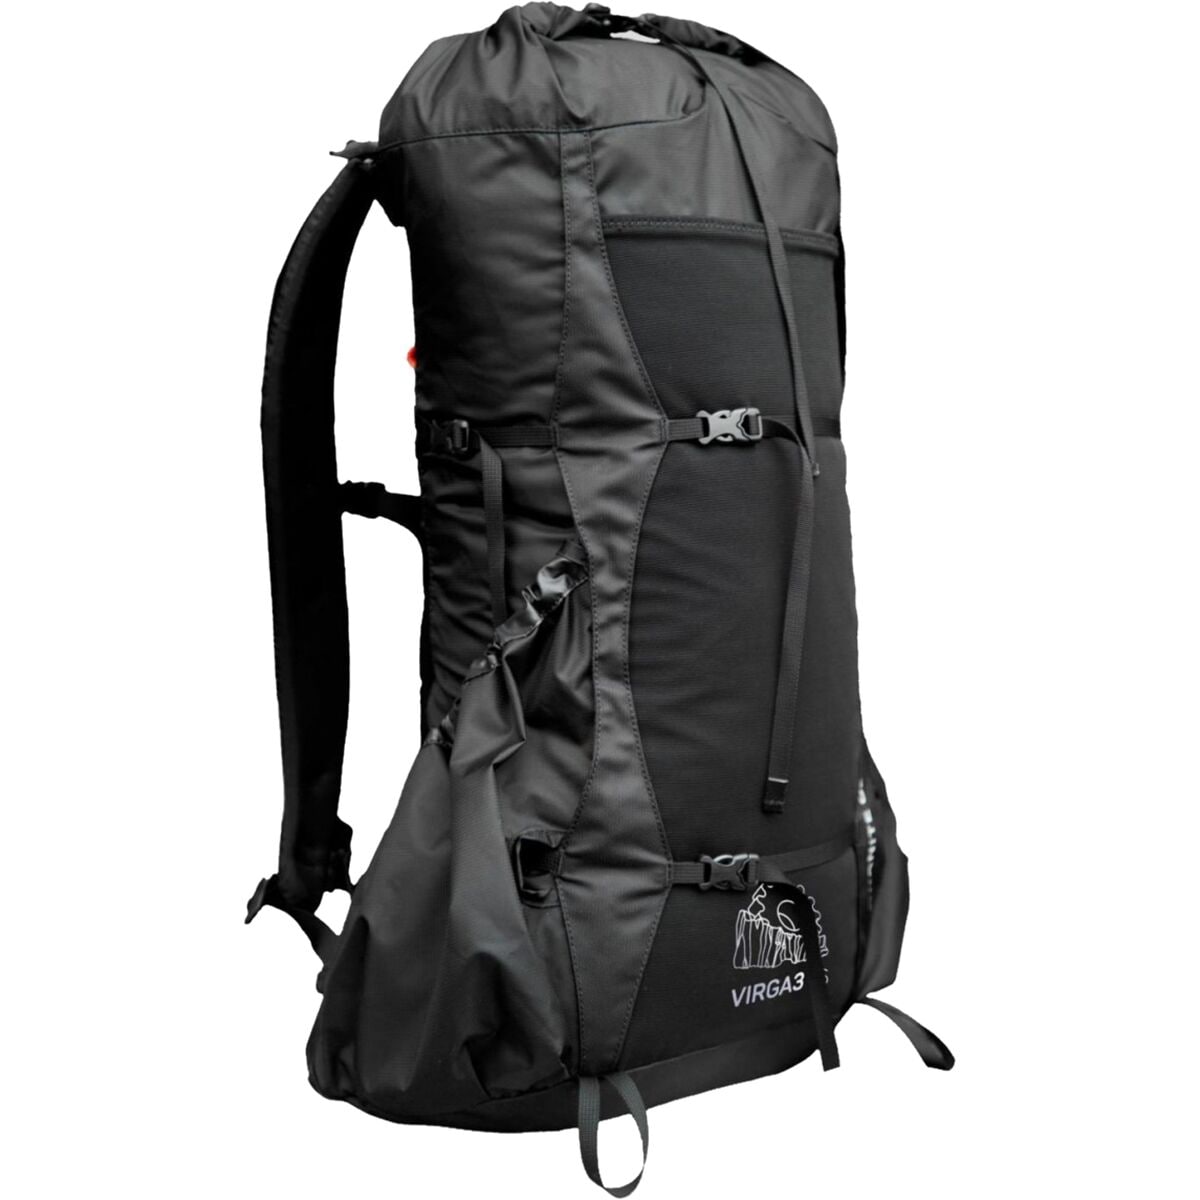 Photos - Backpack Granite Gear Virga 3 26L  